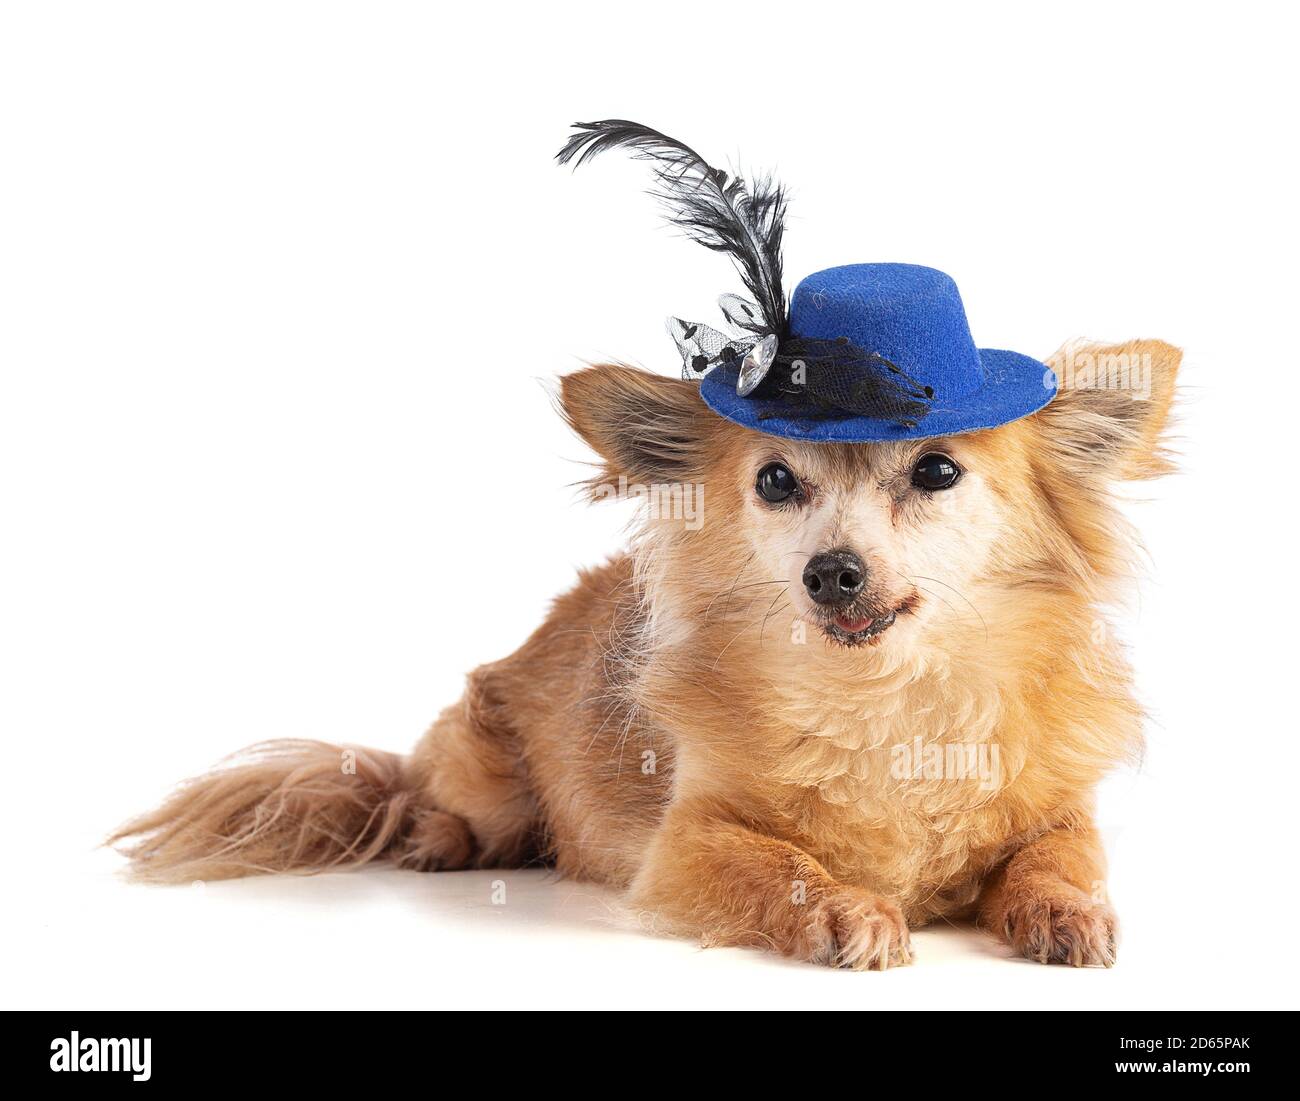 Chihuahua aux cheveux longs avec un chapeau bleu sur fond blanc Banque D'Images